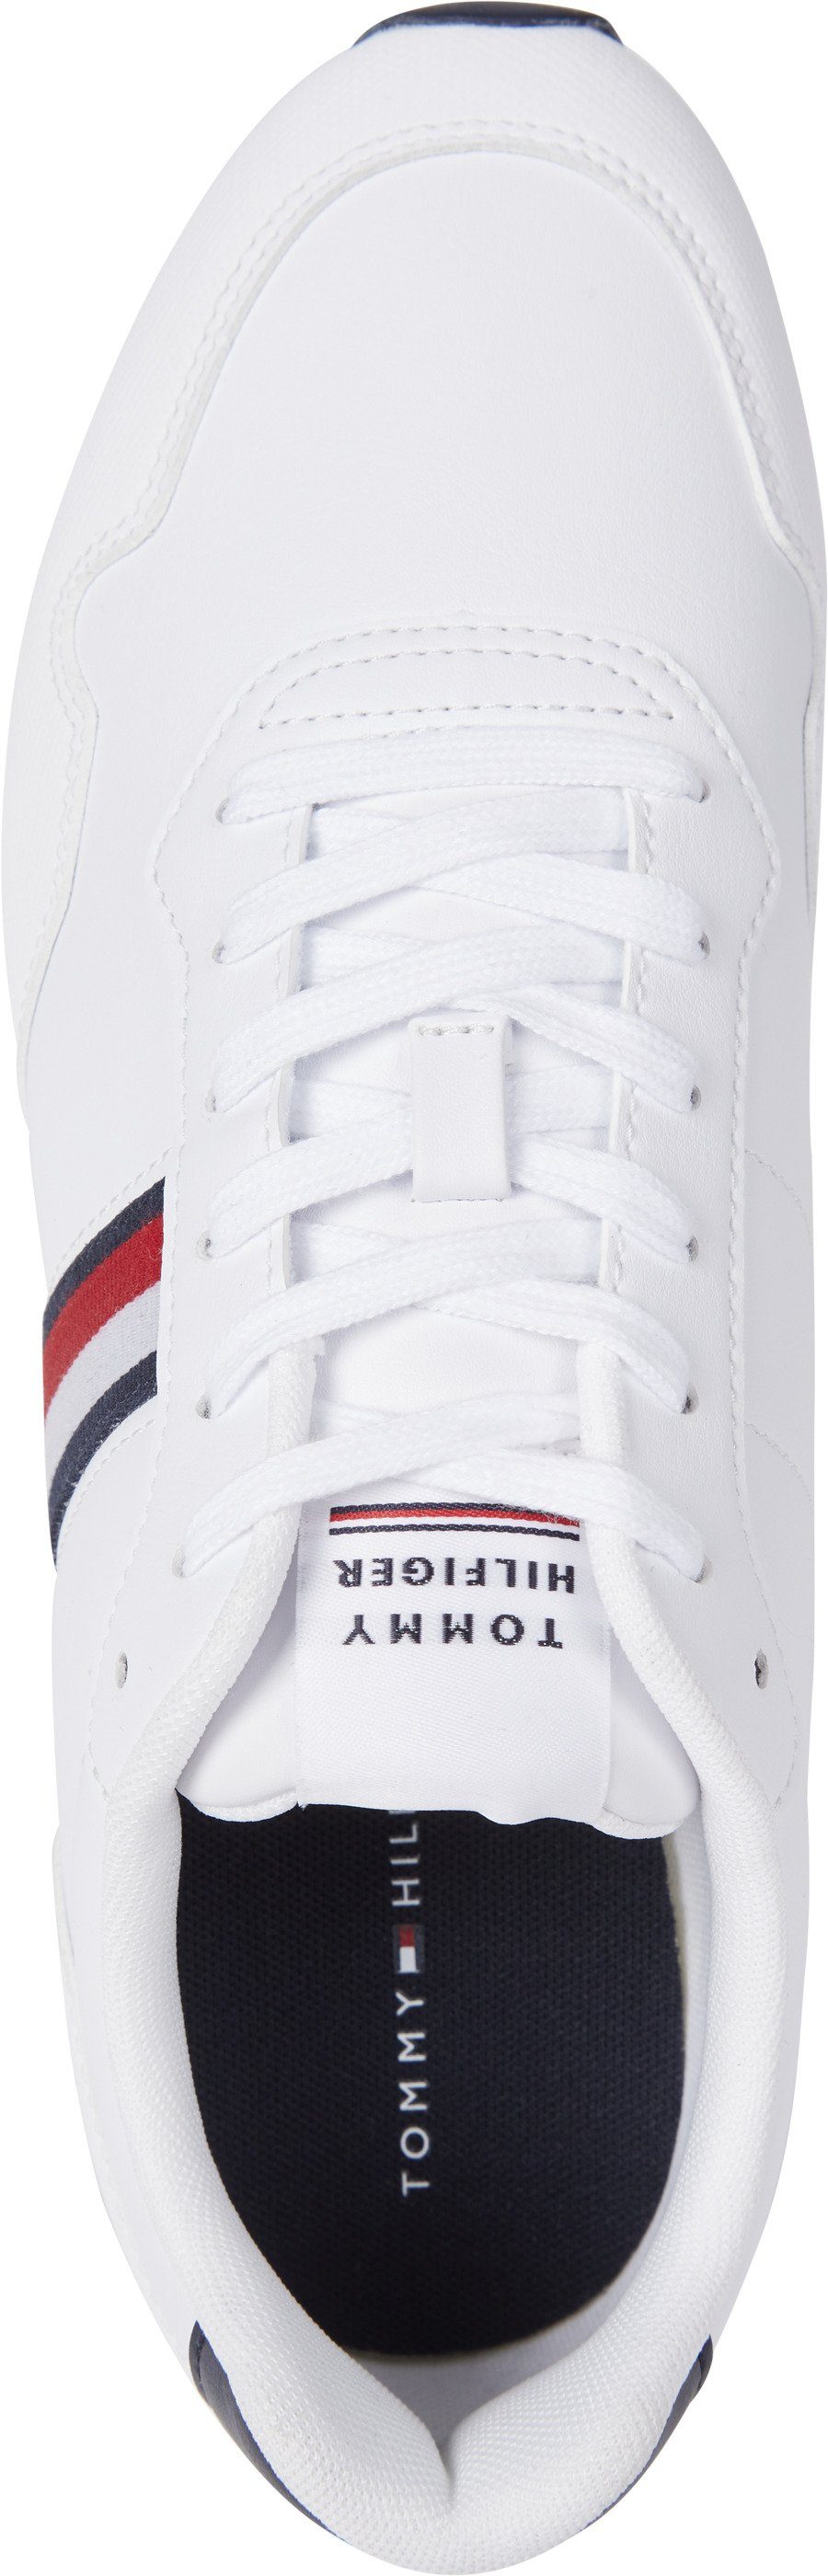 Tommy Hilfiger CORE PU mit Streifen LTH seitlichen weiß-blau-rot Sneaker LO RUNNER